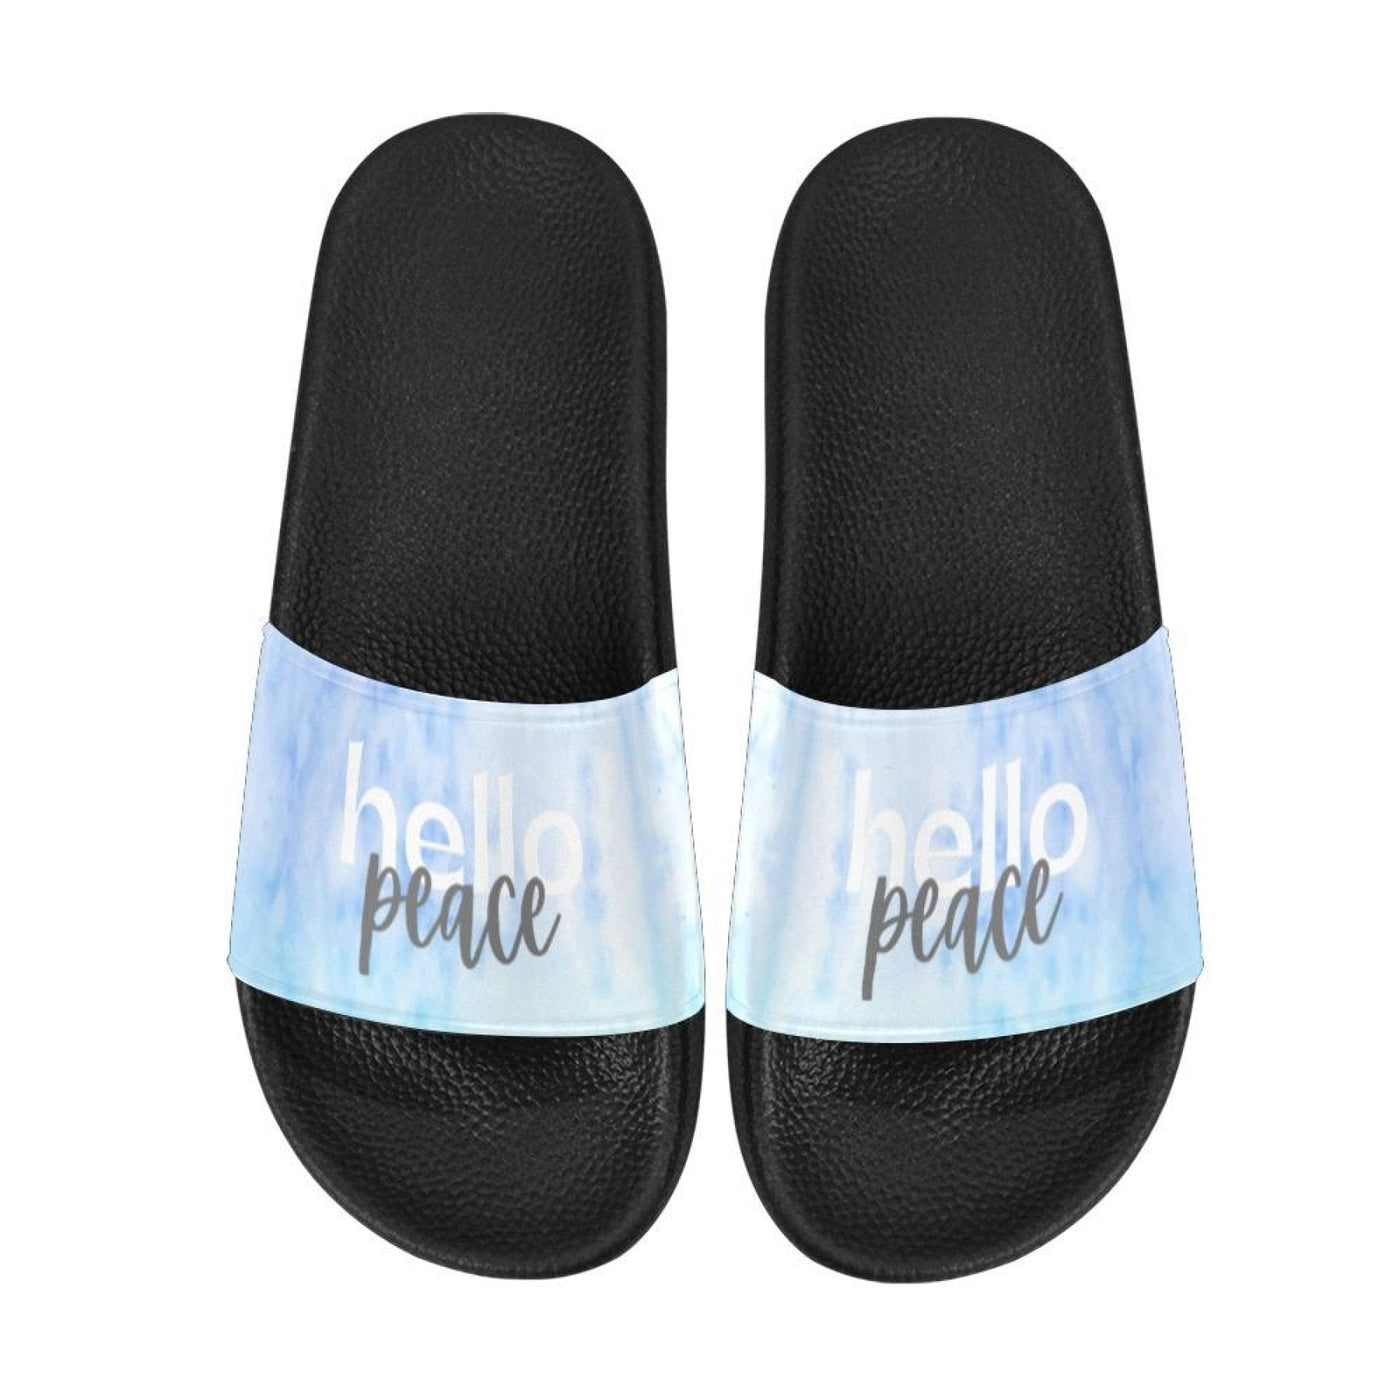 Womens Slides Flip Flop Sandals Blue Watercolor Hello Peace Print - Womens |